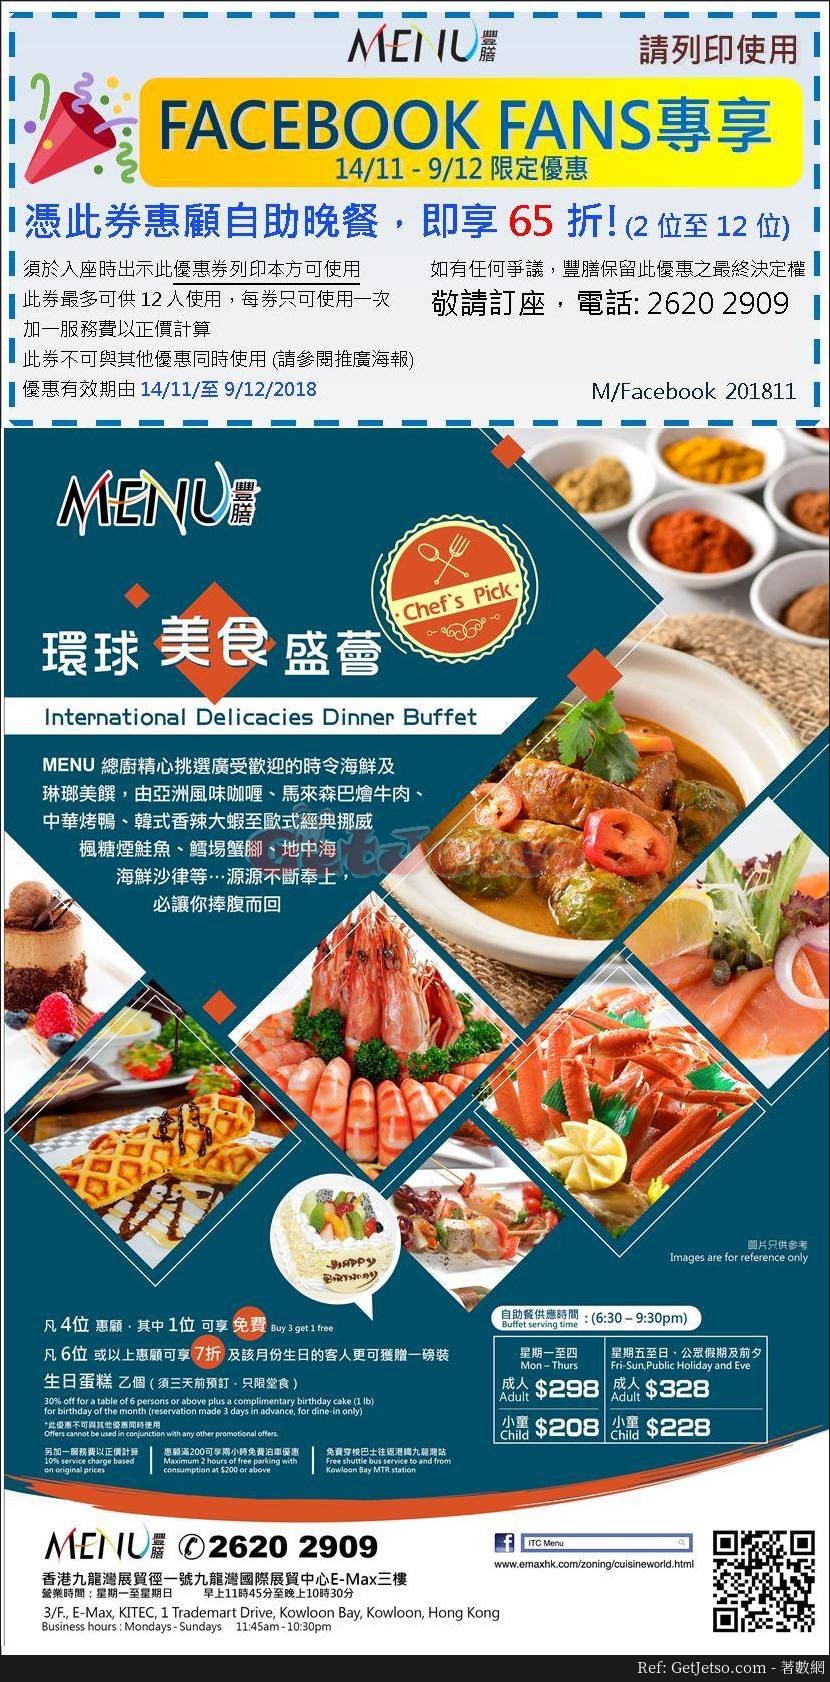 Menu 豐膳餐廳65折自助晚餐優惠(至18年12月9日)圖片1